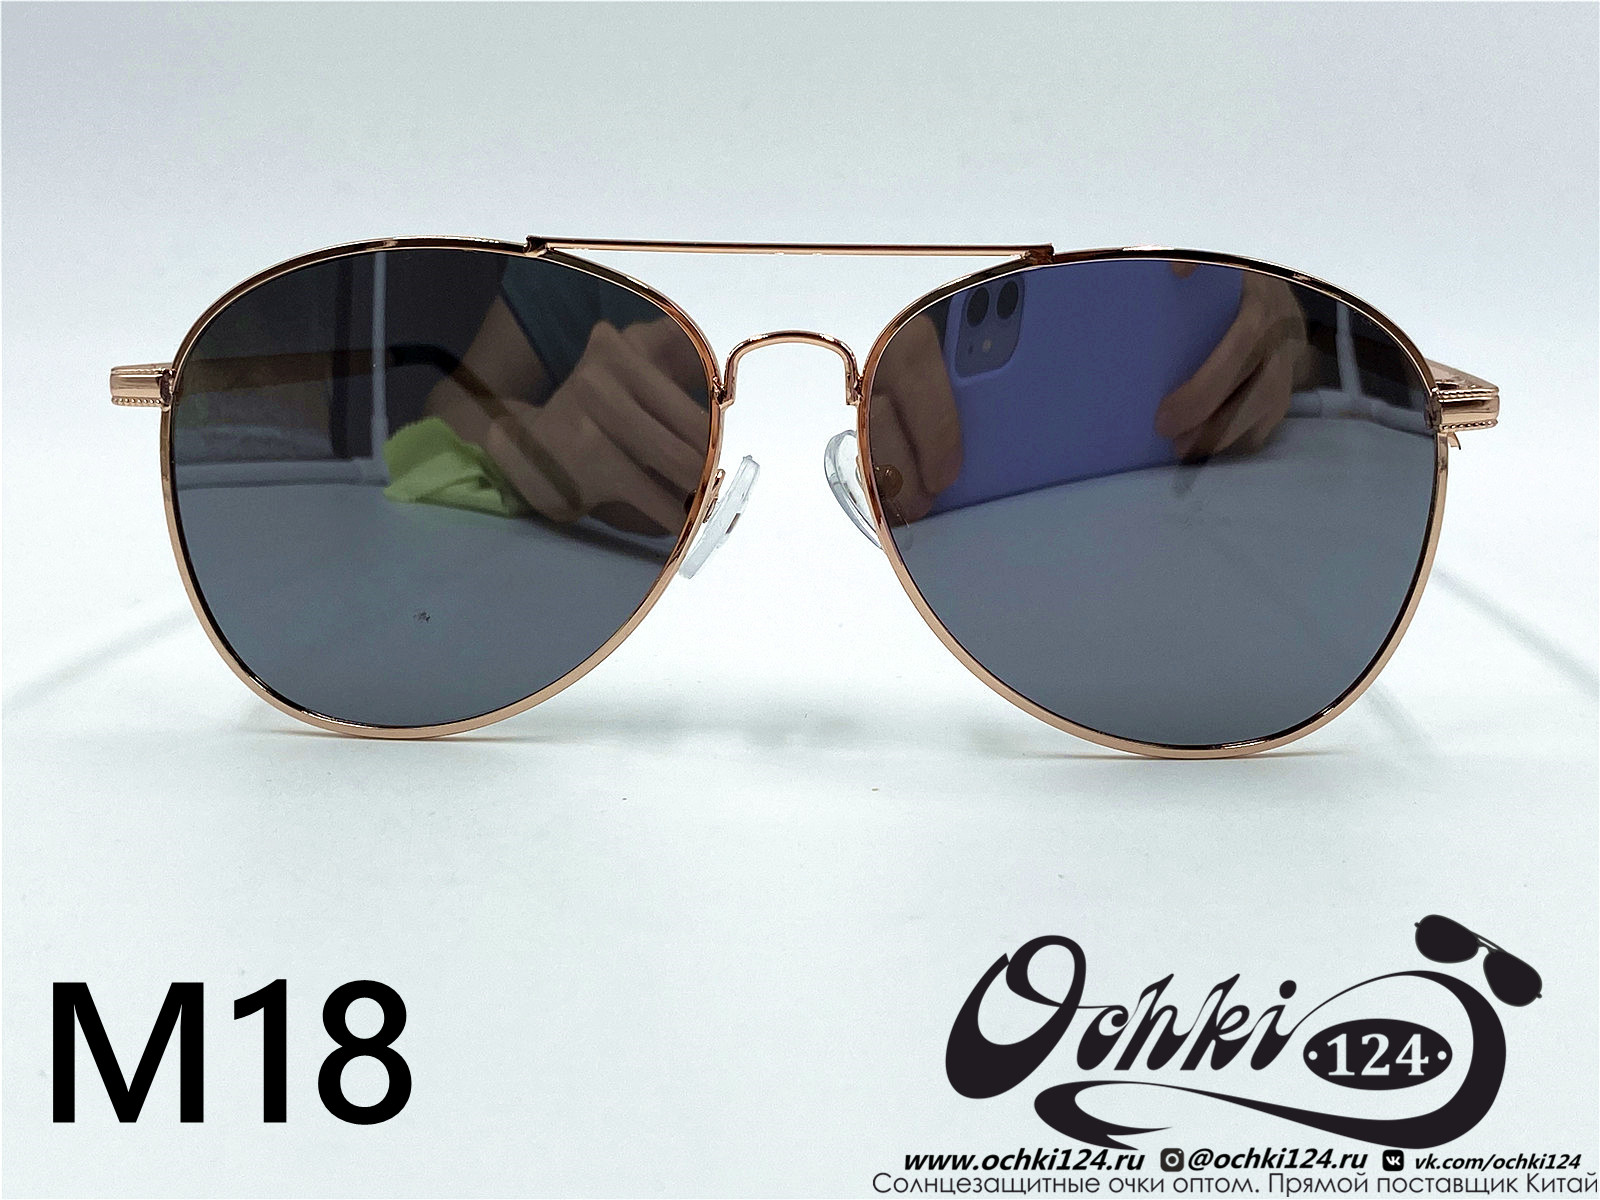  Солнцезащитные очки картинка 2022 Мужские Авиаторы KaiFeng M18-6 